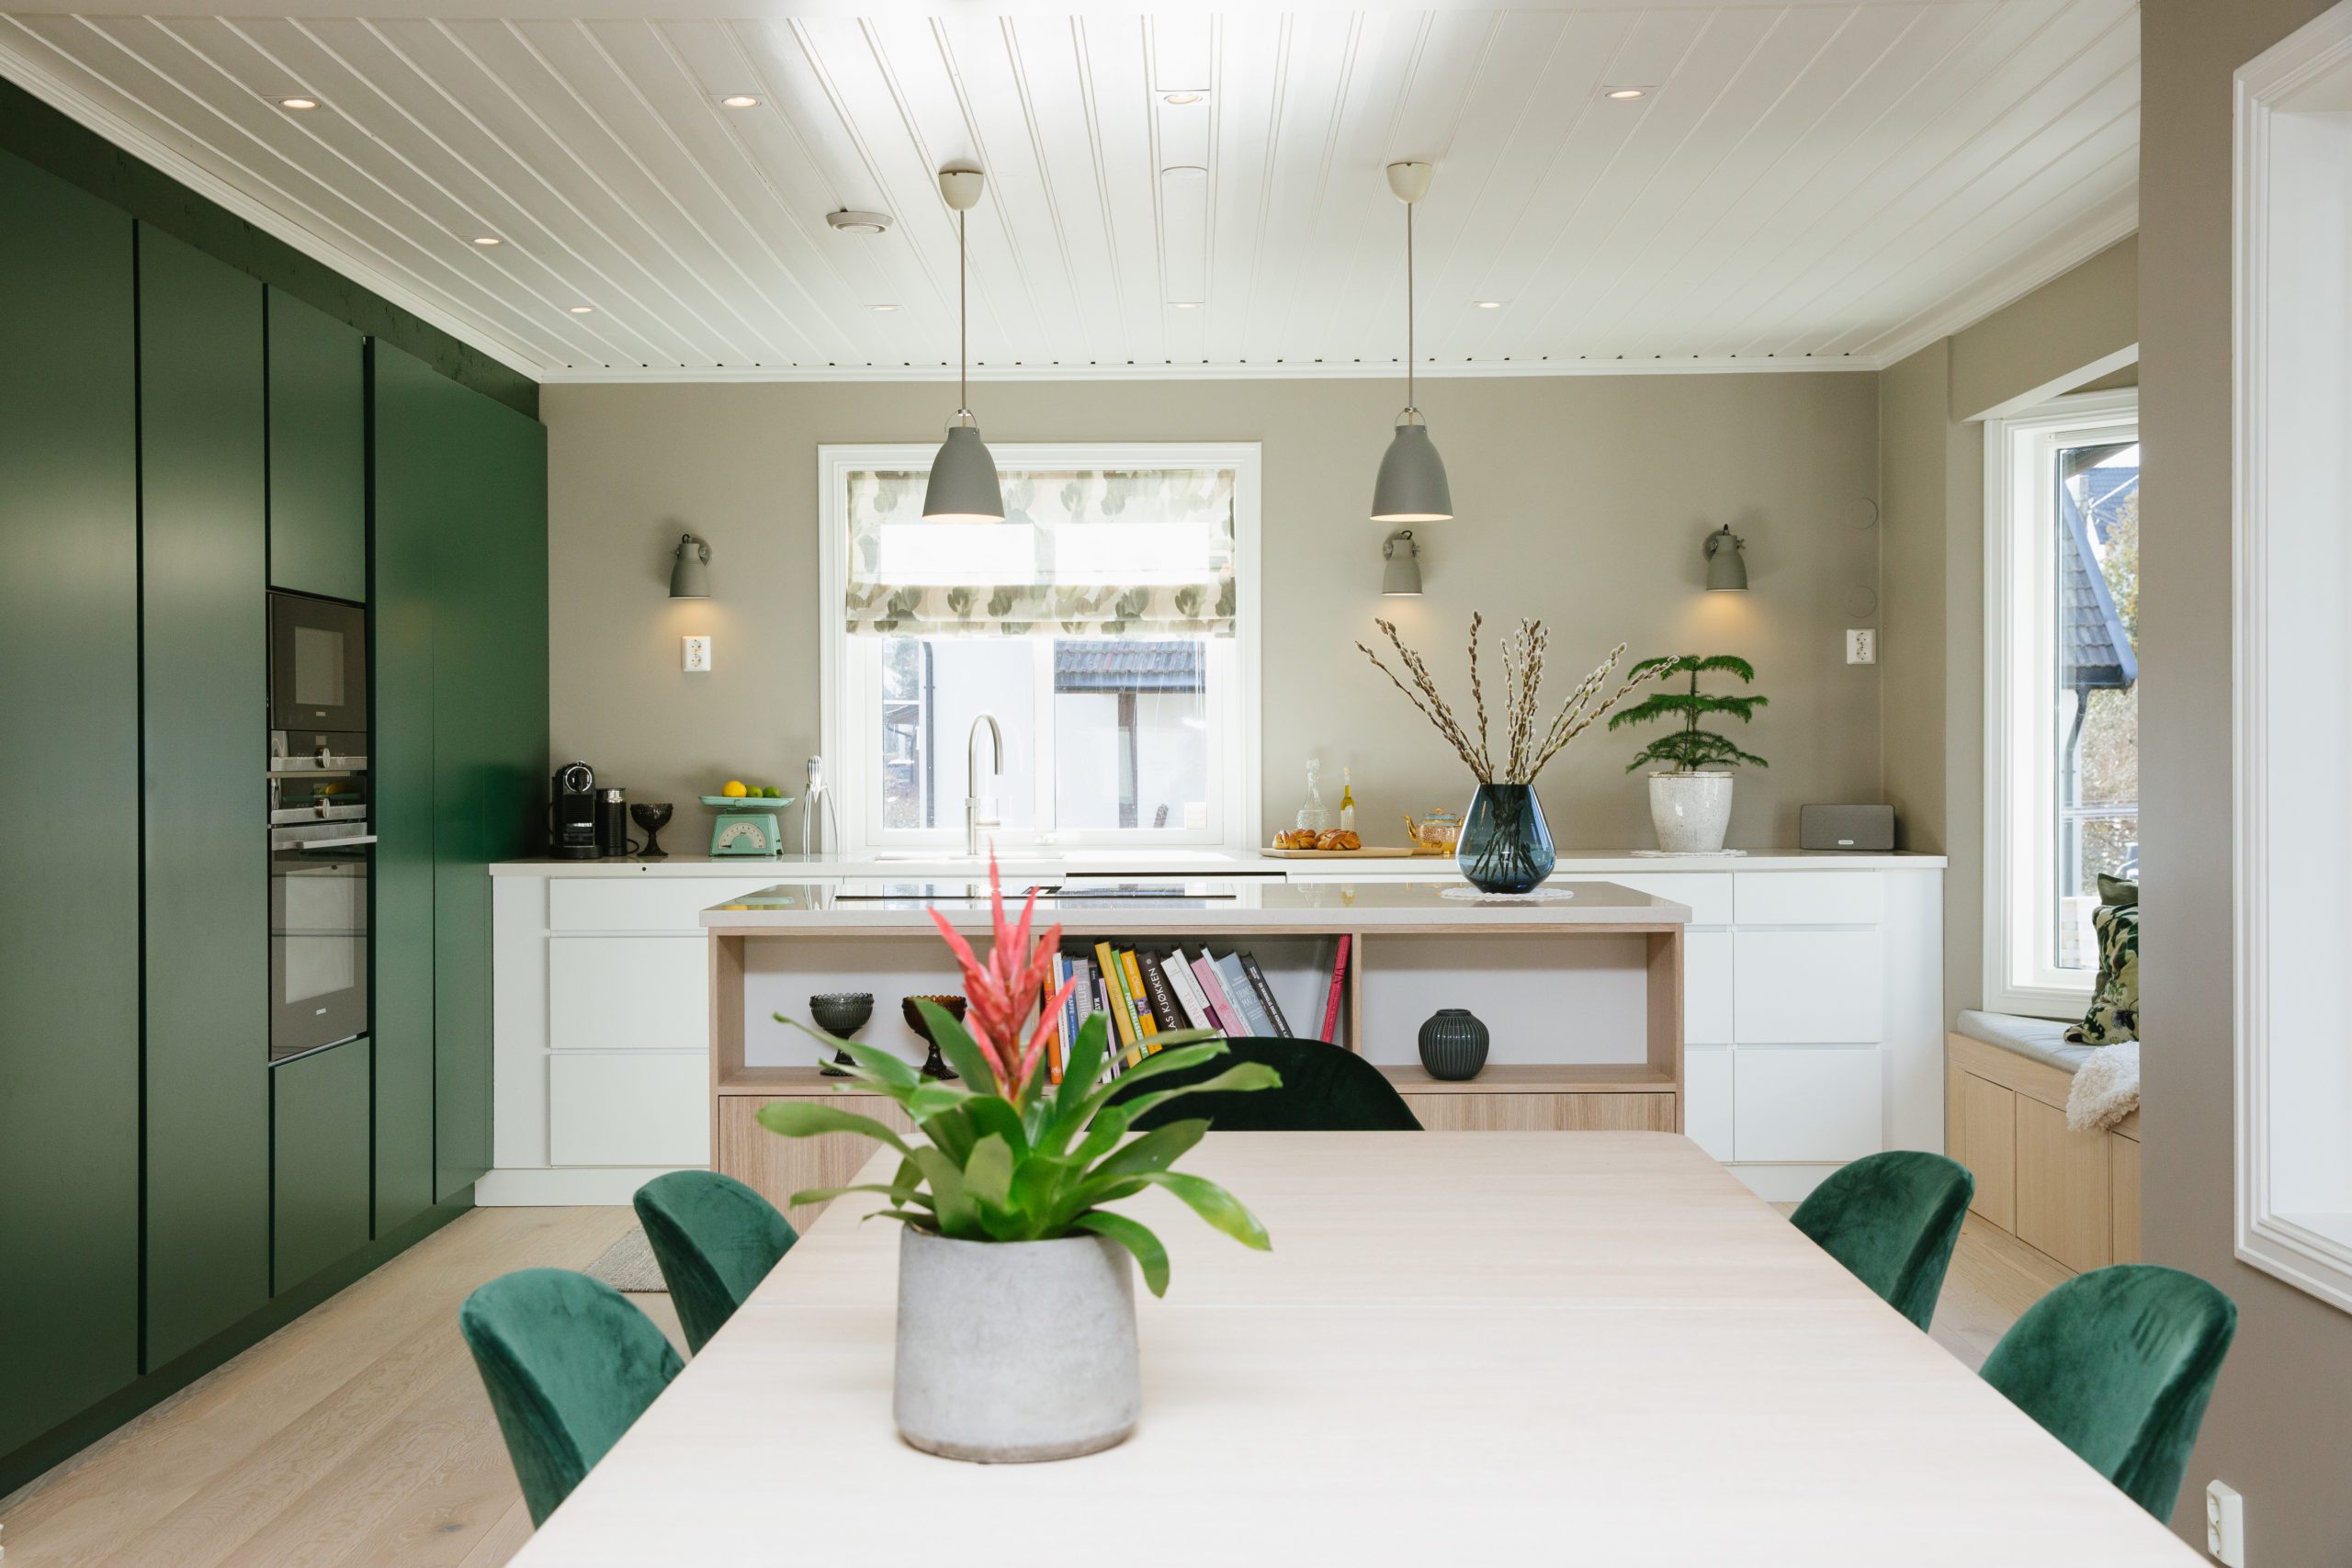 Romslig kjøkken med grønne høyskap, kjøkkenøy og spisestue med grønne stoler